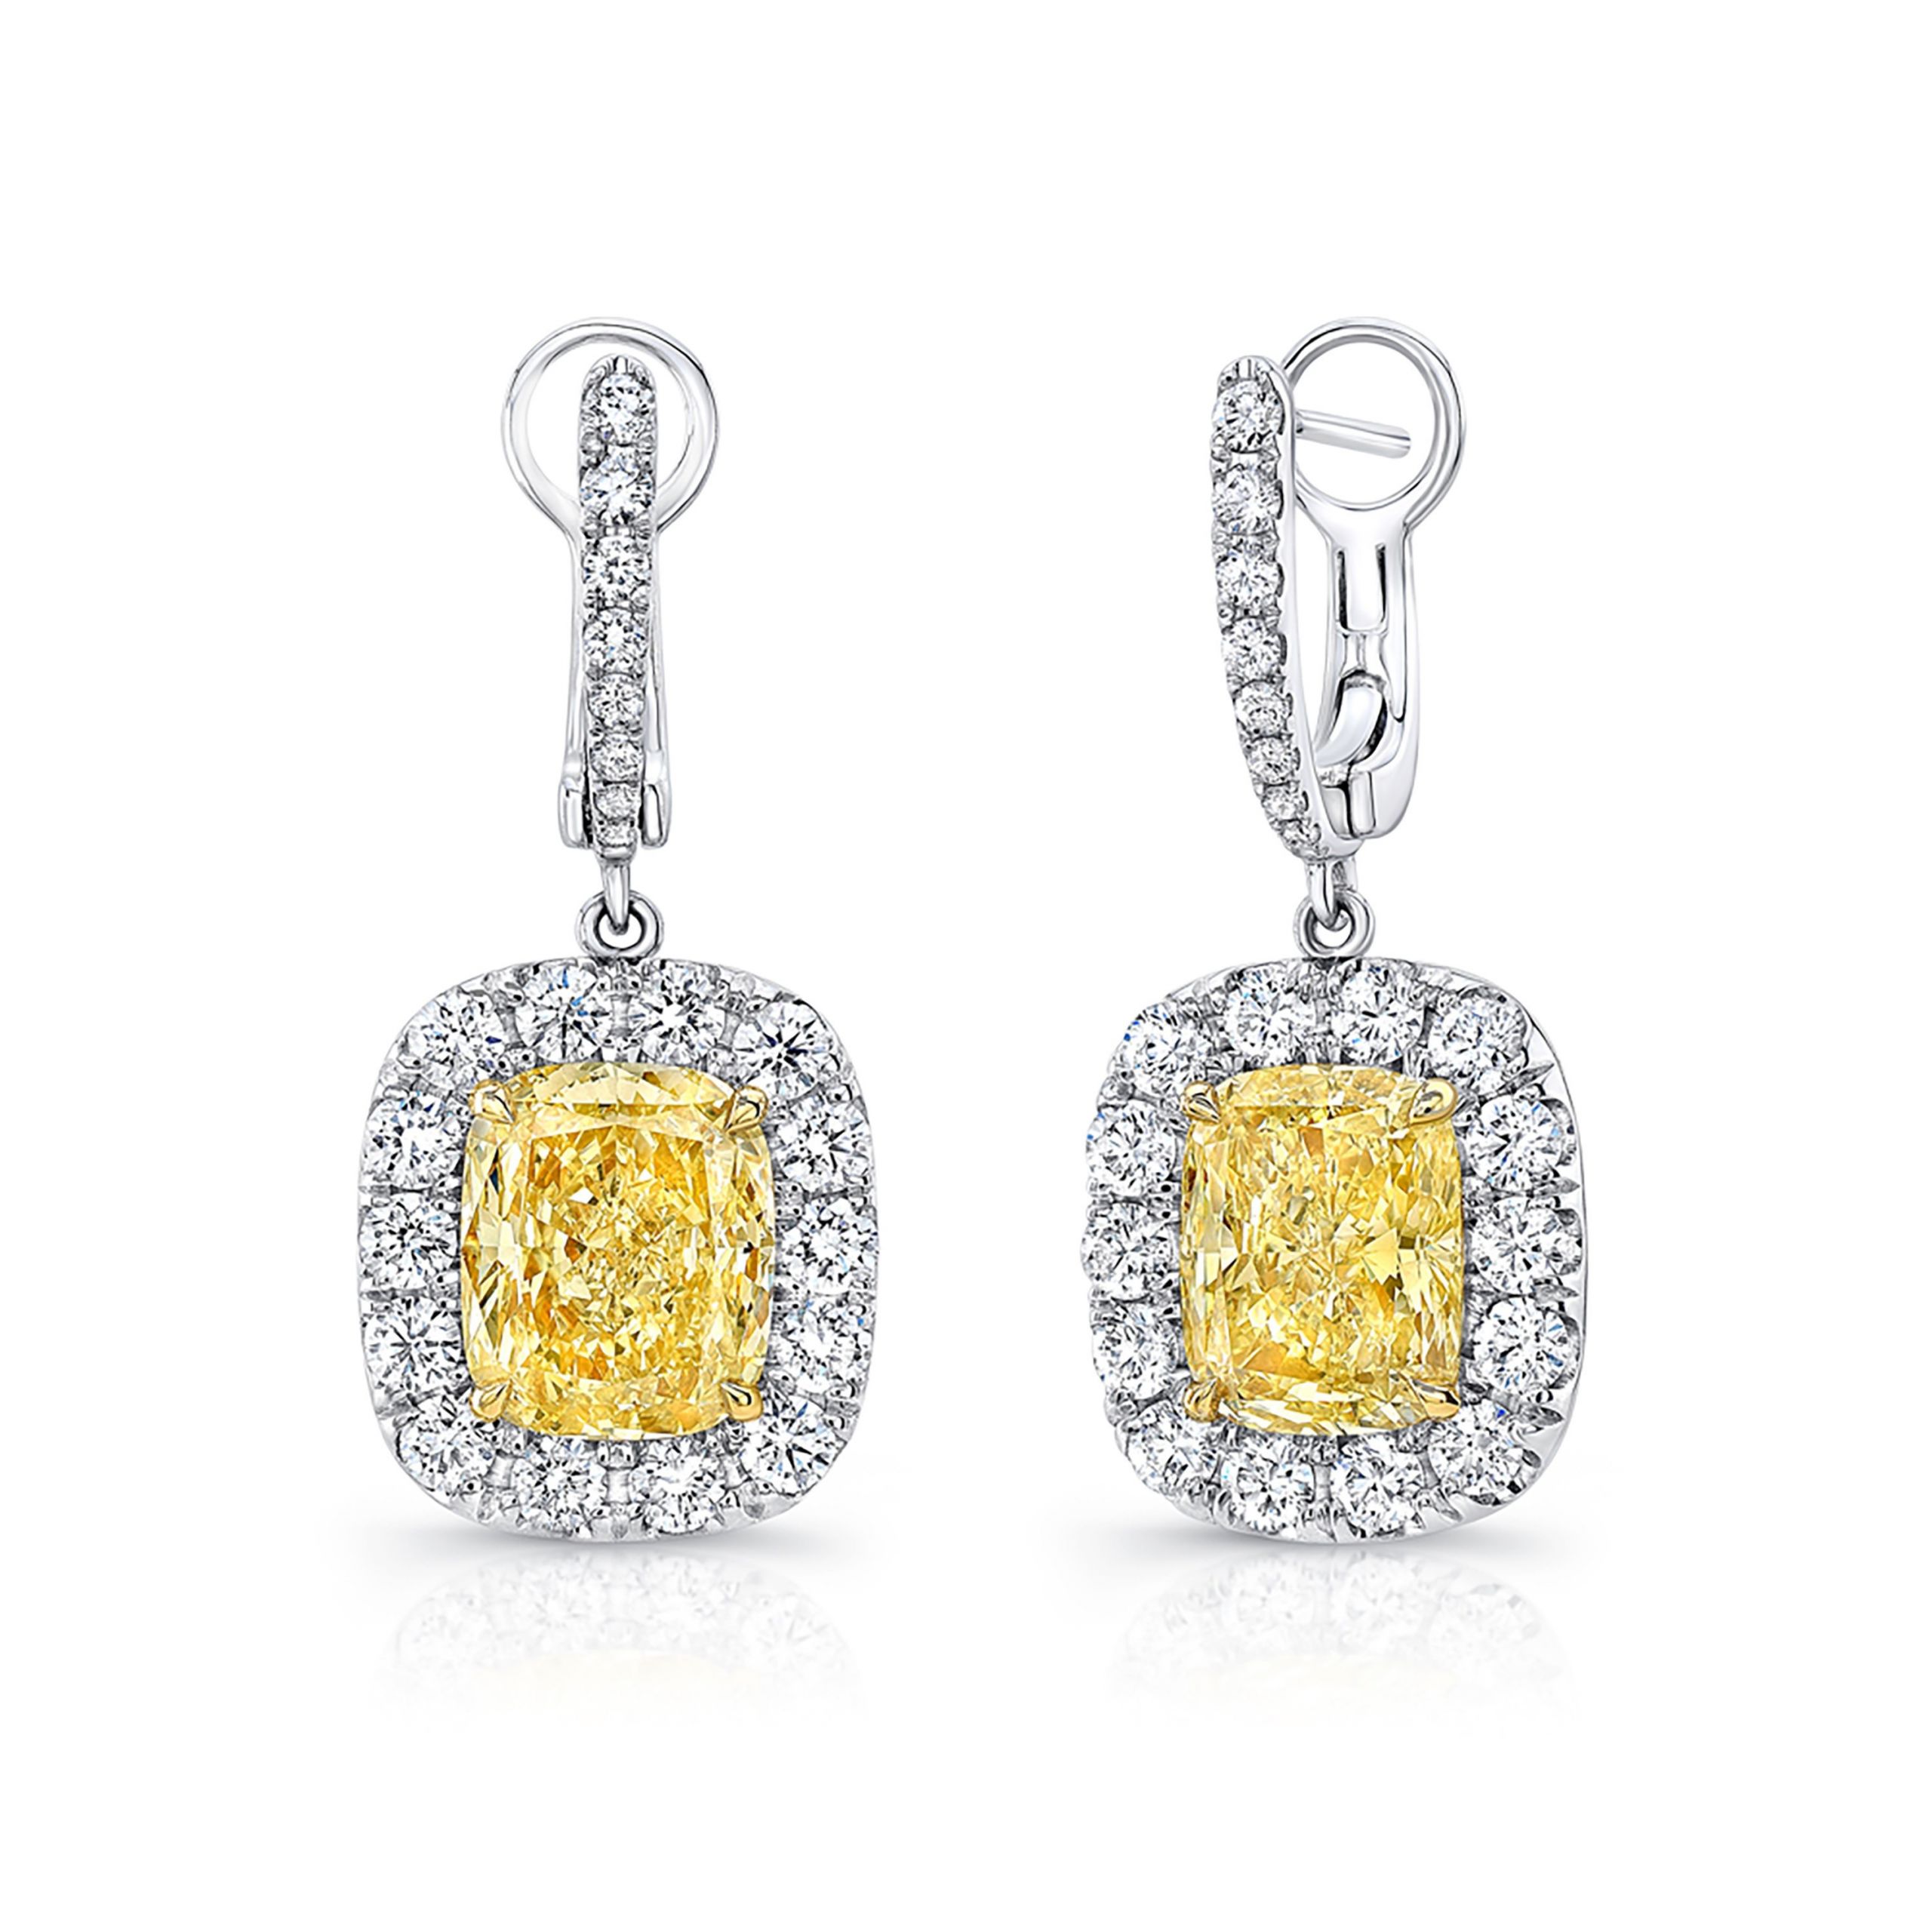 Yellow Diamond Earrings
 Uneek Cushion Cut Fancy Yellow Diamond Dangle Earrings in